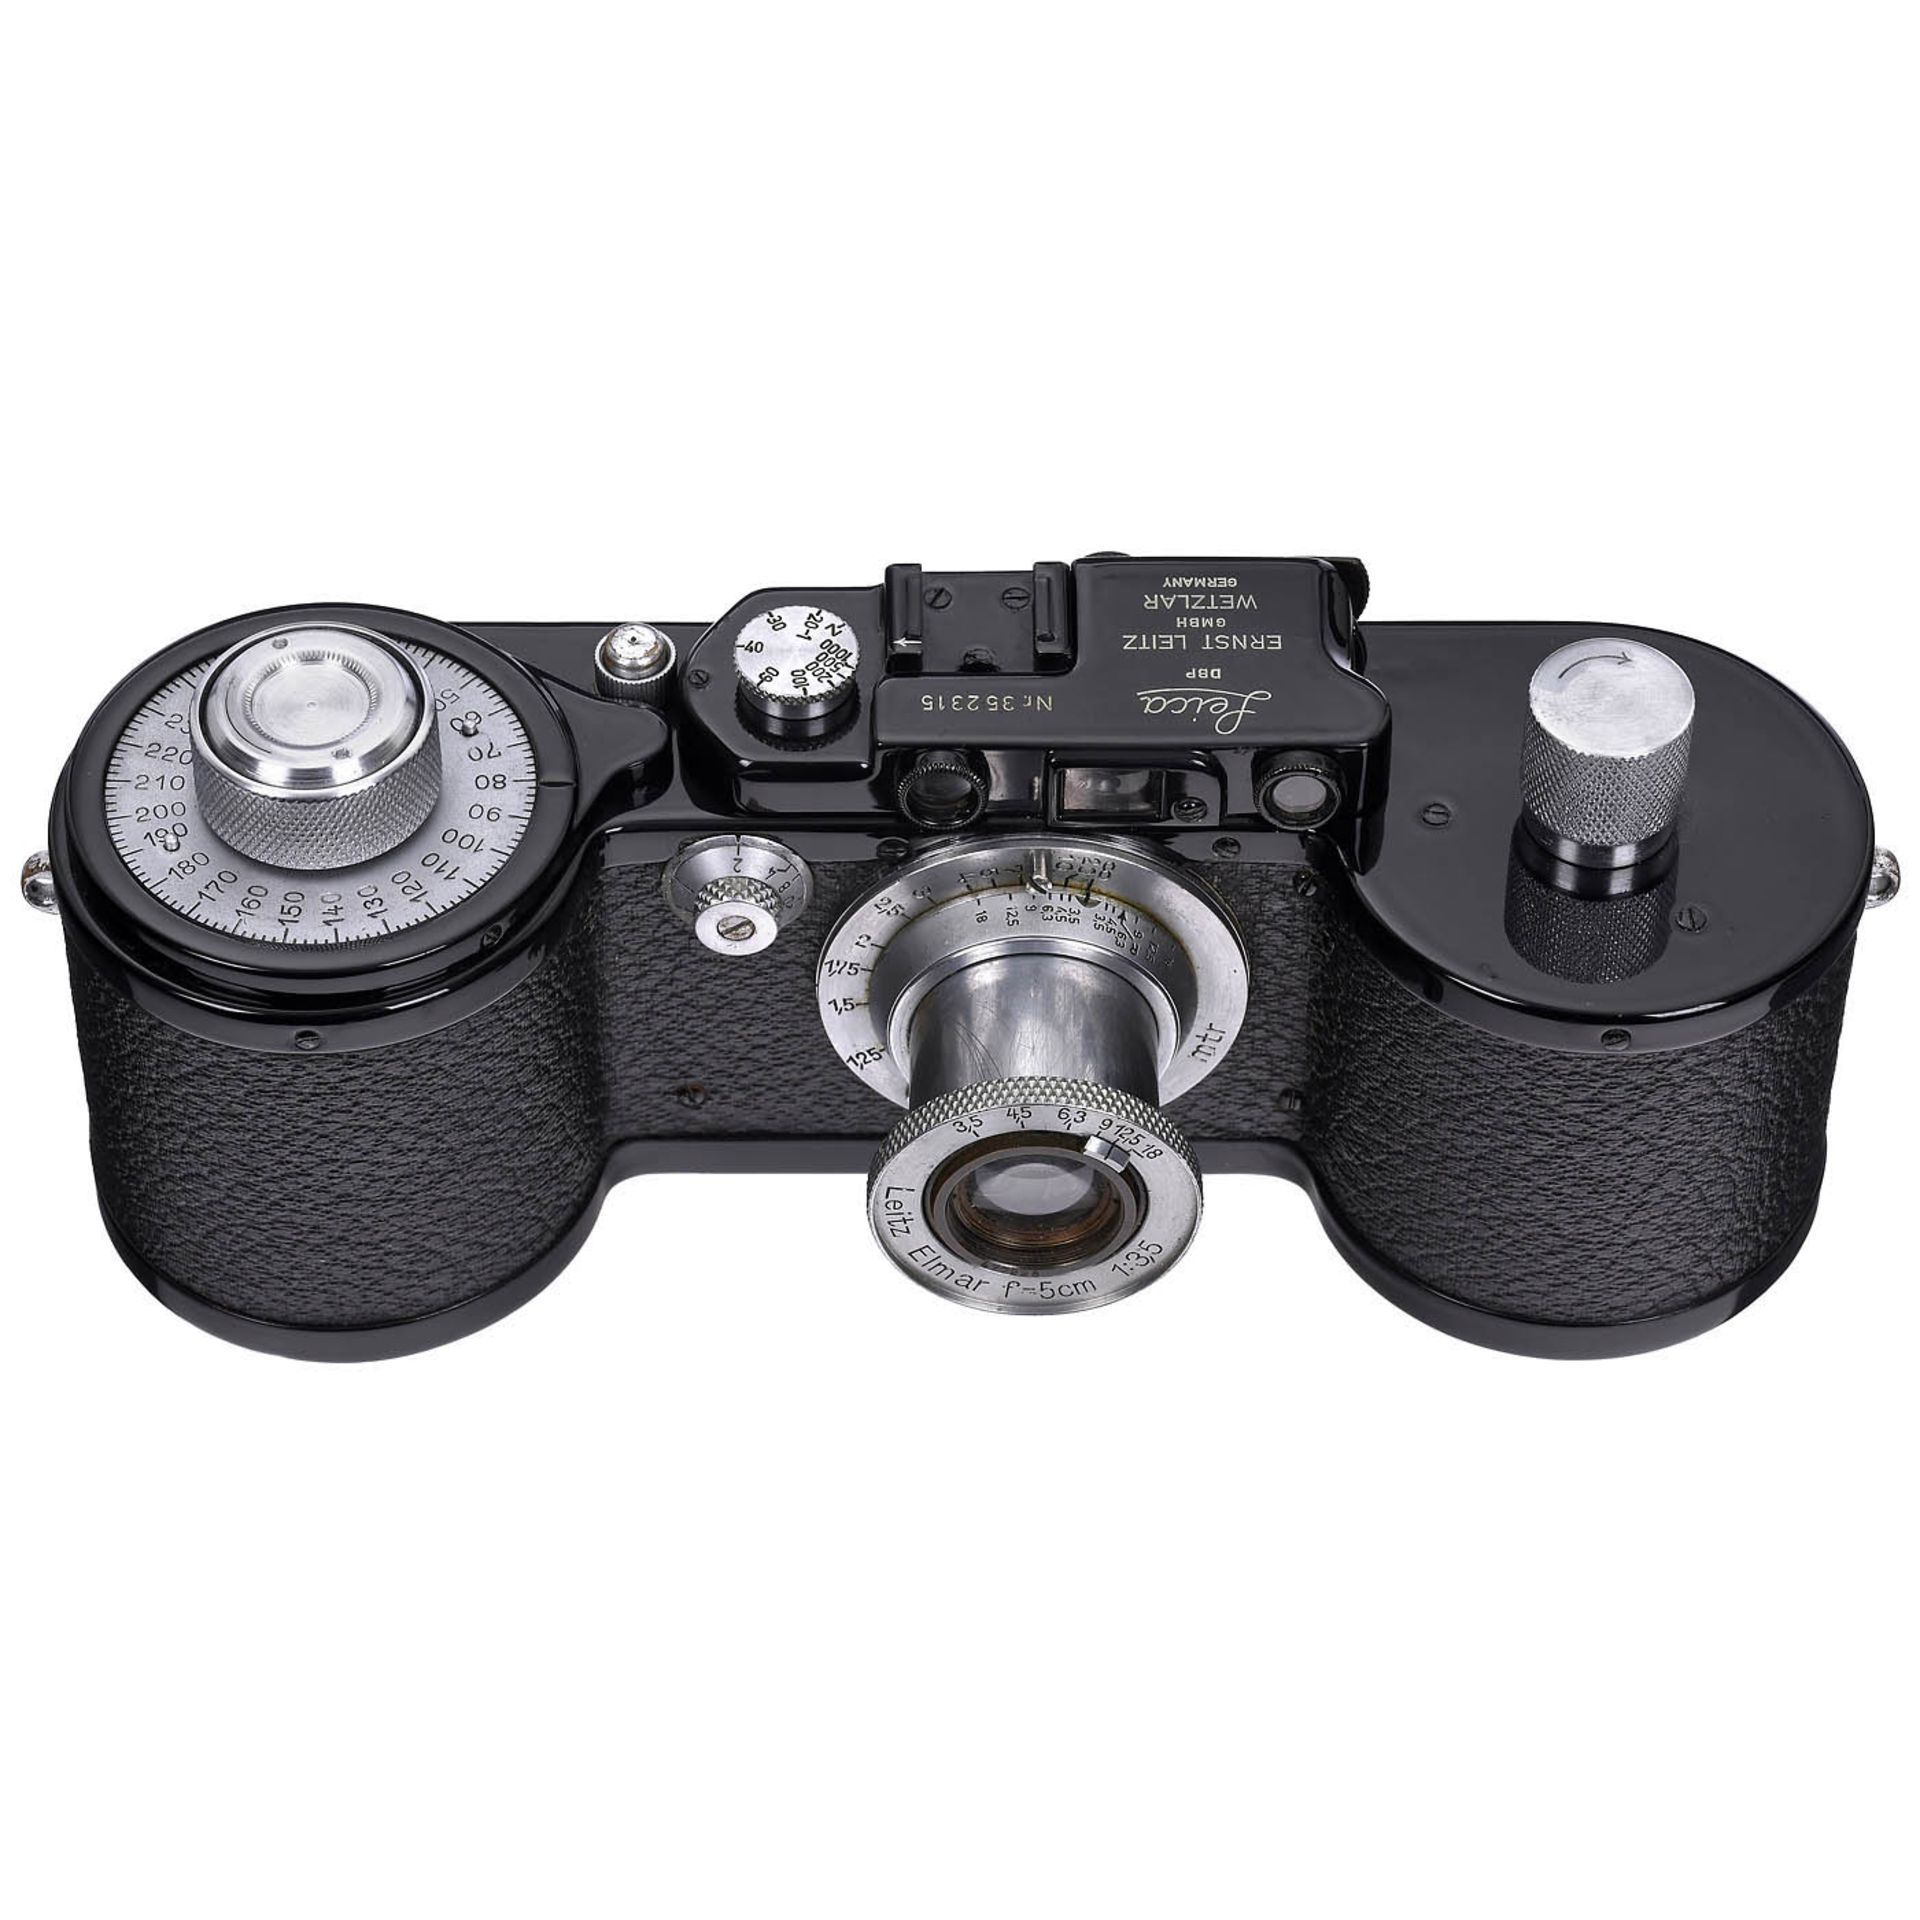 Leica 250 GG Reporter Camera, c. 1940 - Image 3 of 7